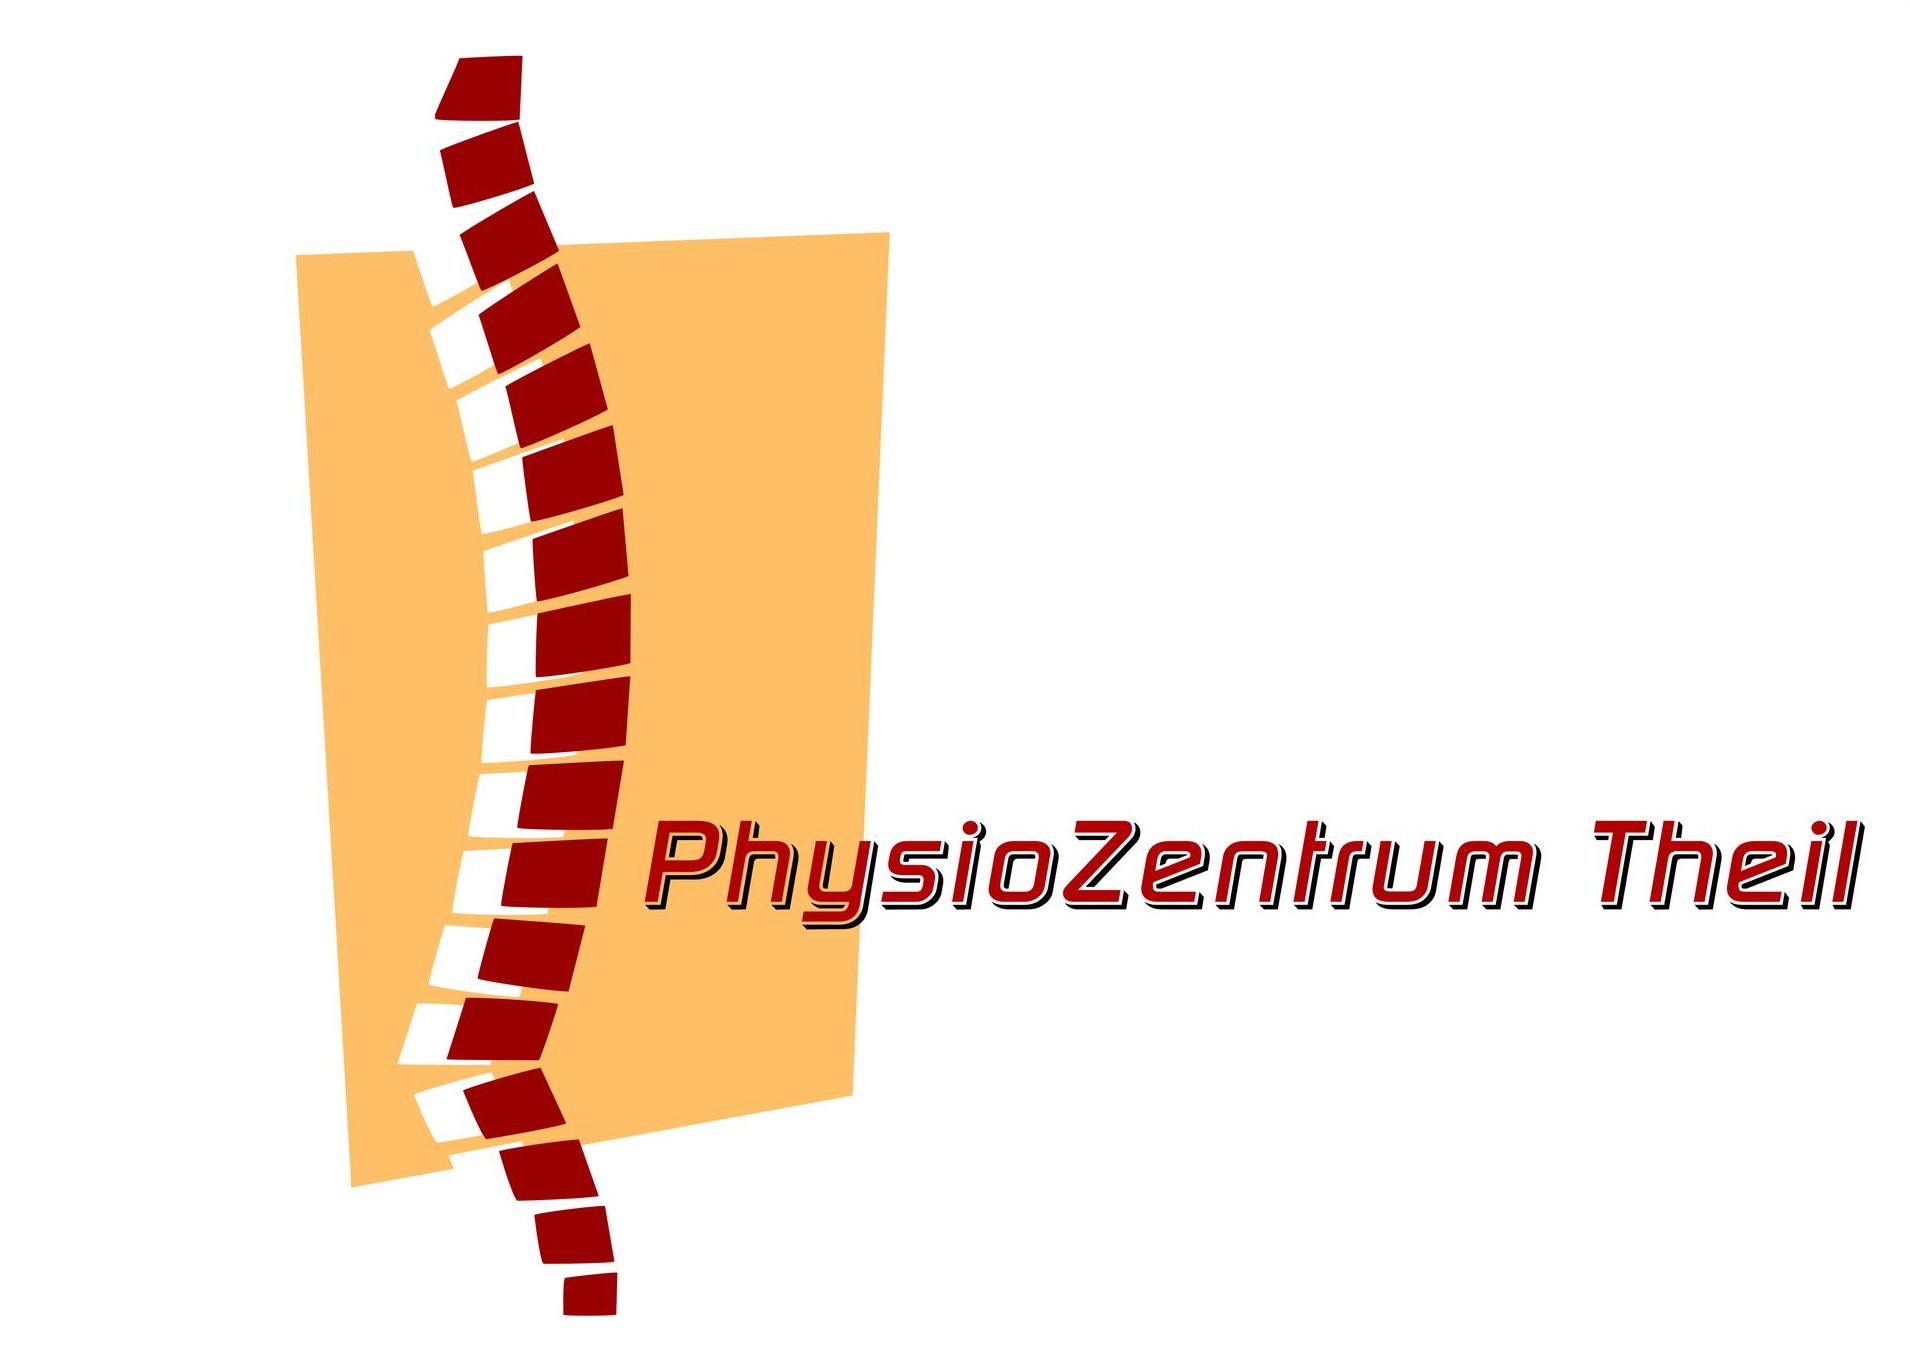 PhysioZentrum Theil in Herne